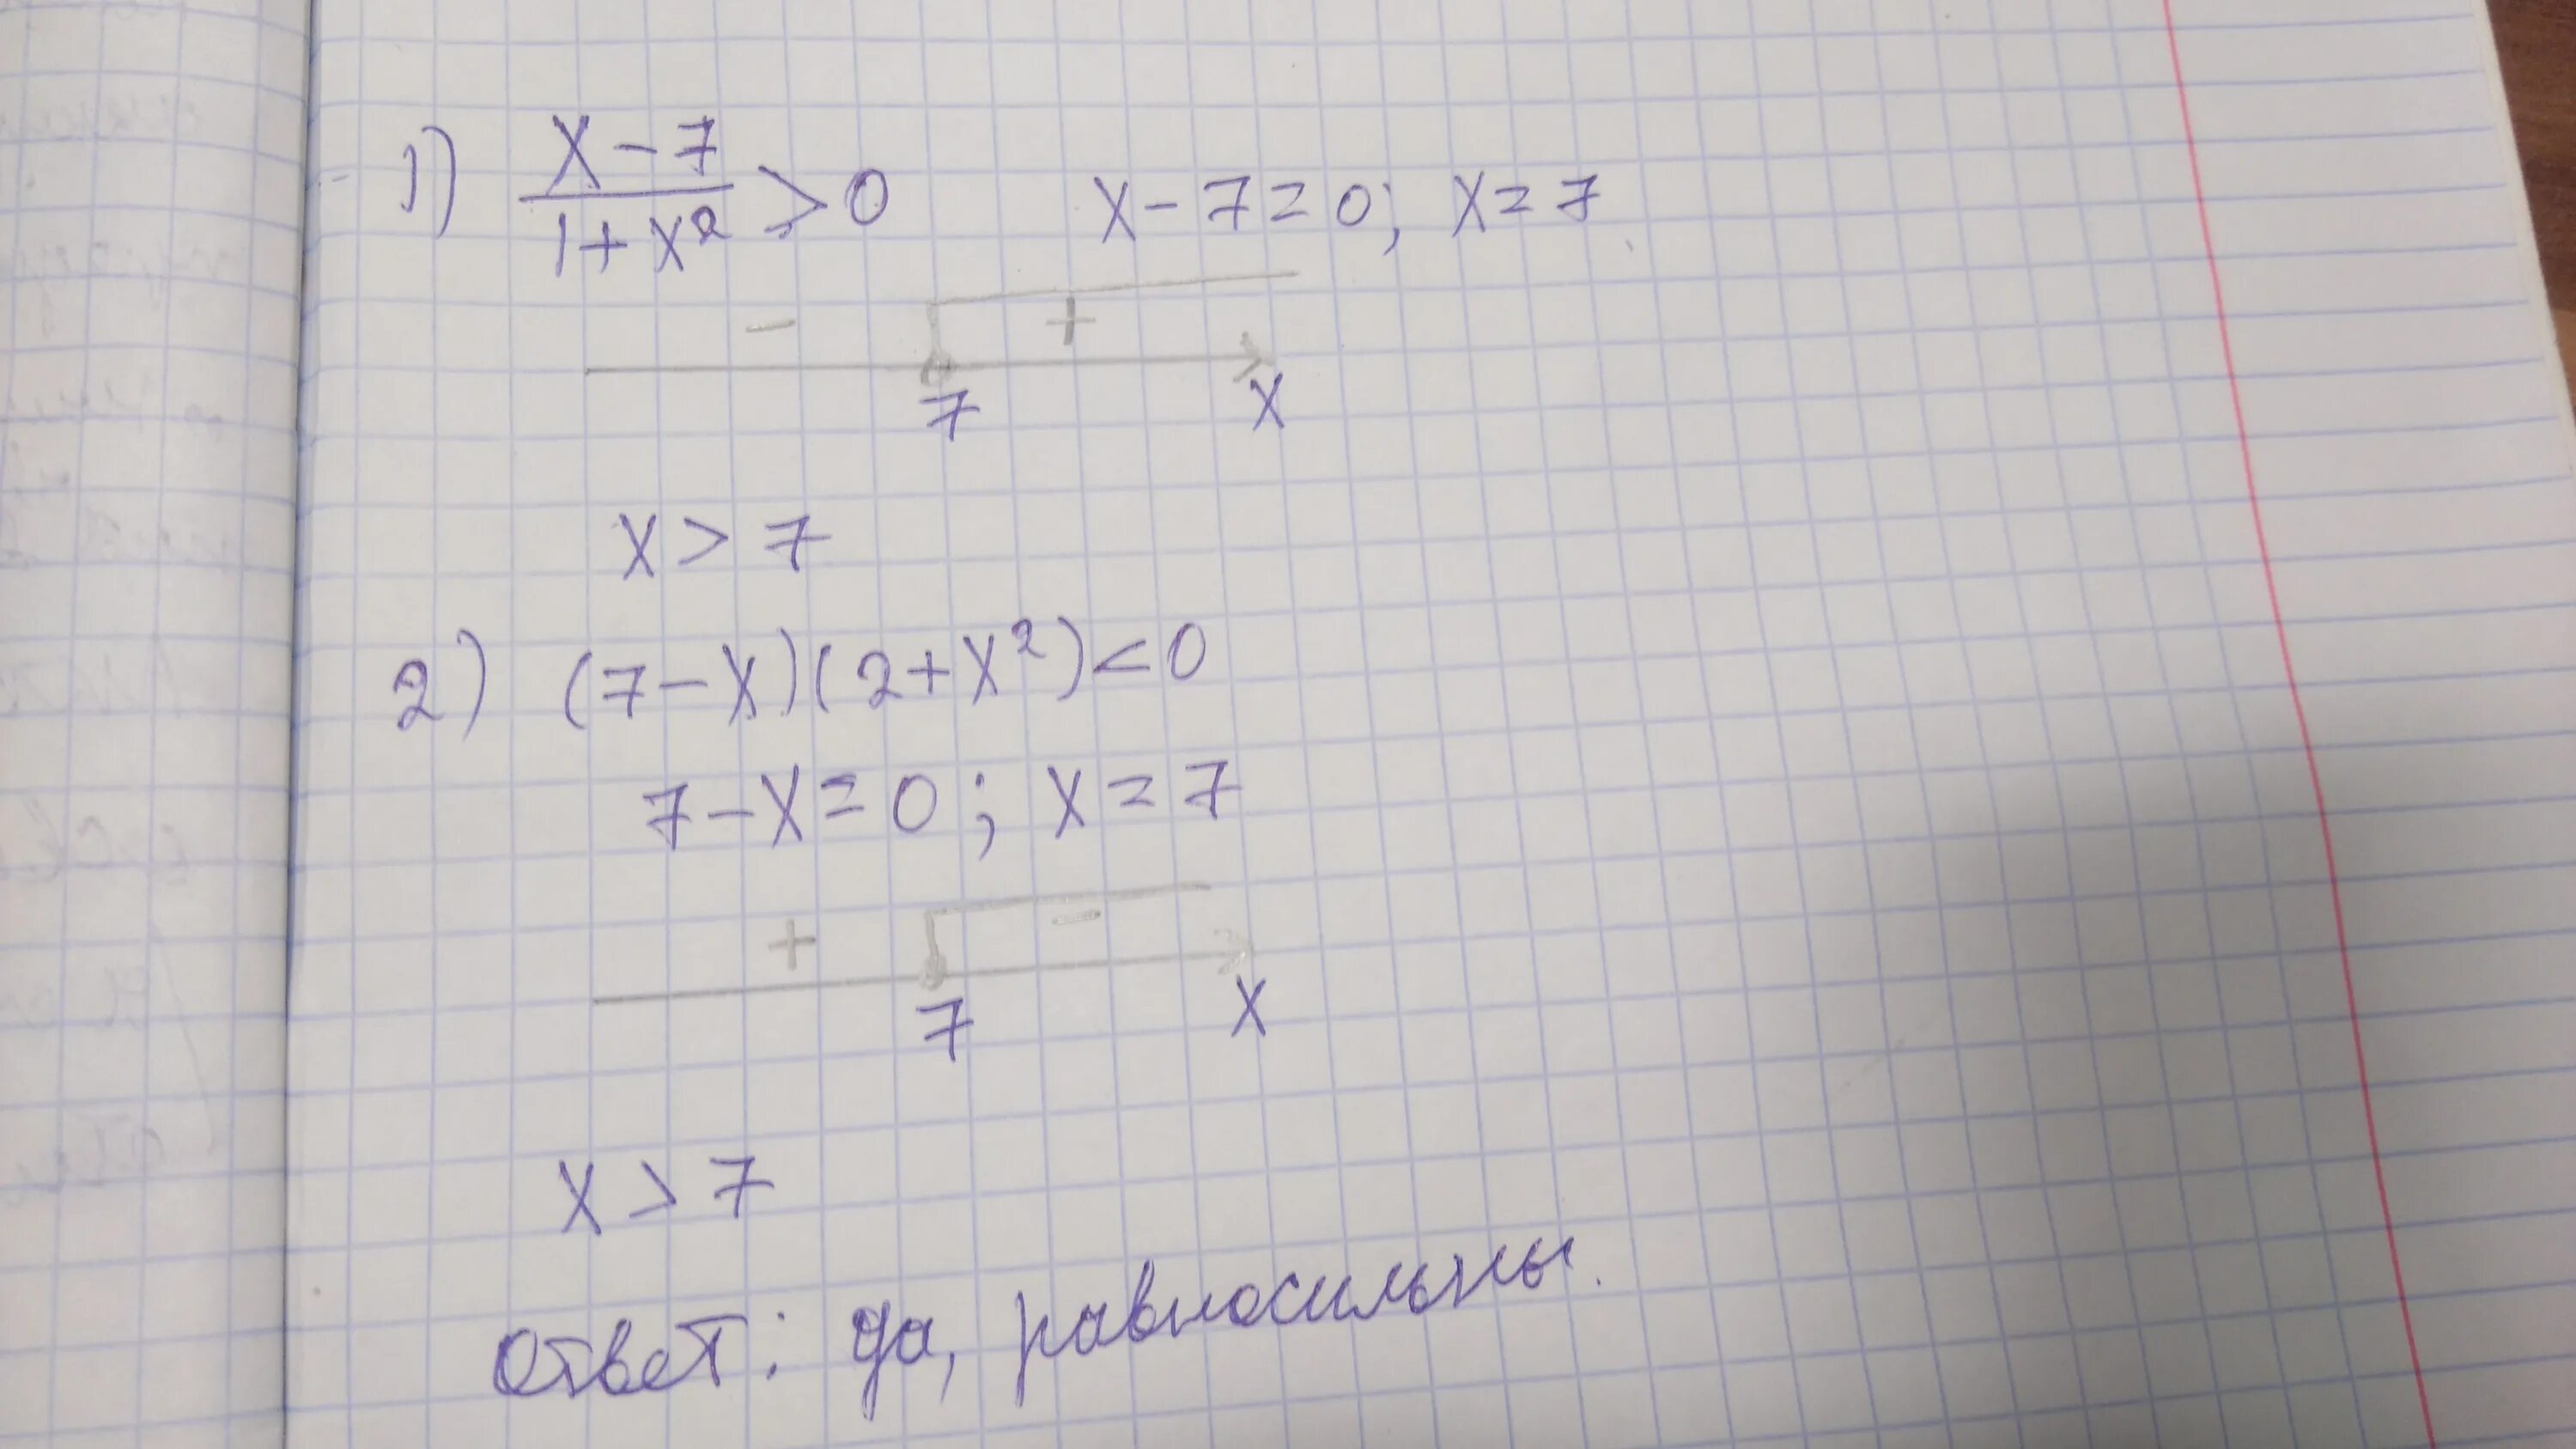 3x 7 0 ответ. Равносильны ли неравенства (x + 2). Равносильны ли неравенства x-7/1+x^2. Равносильны ли неравенства 2x2+1/x-2>1 и 2x2+1>x-2. Равносильны ли уравнения x 2 0 x 2 0.